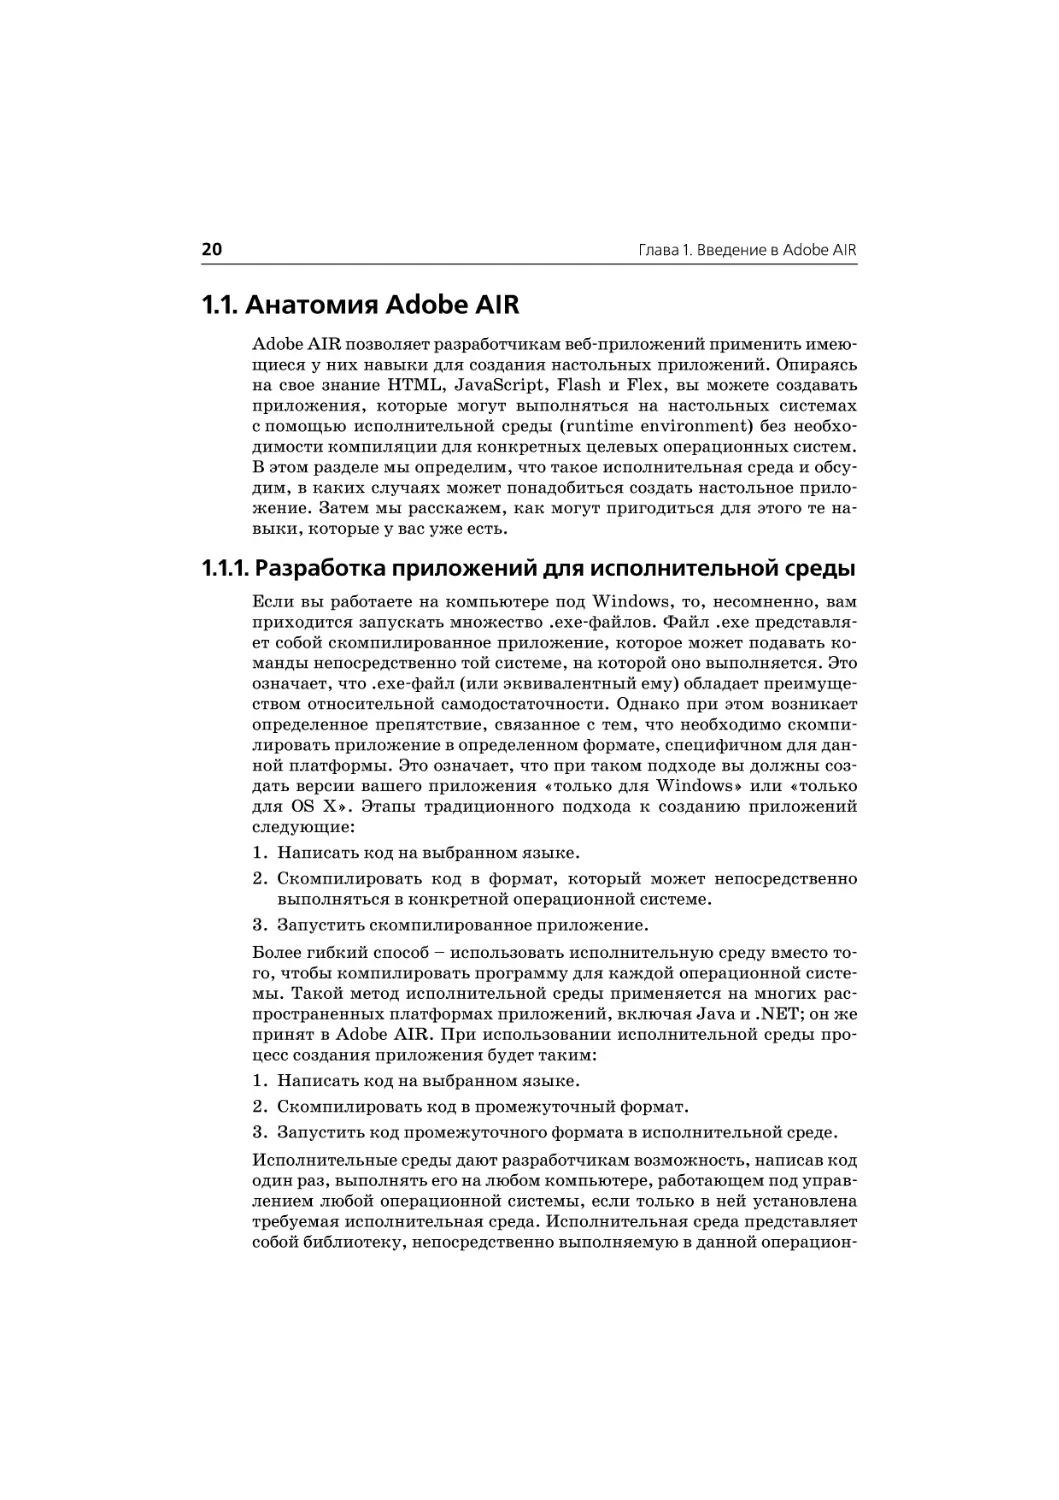 1.1. Анатомия Adobe AIR
1.1.1. Разработка приложений для исполнительной с